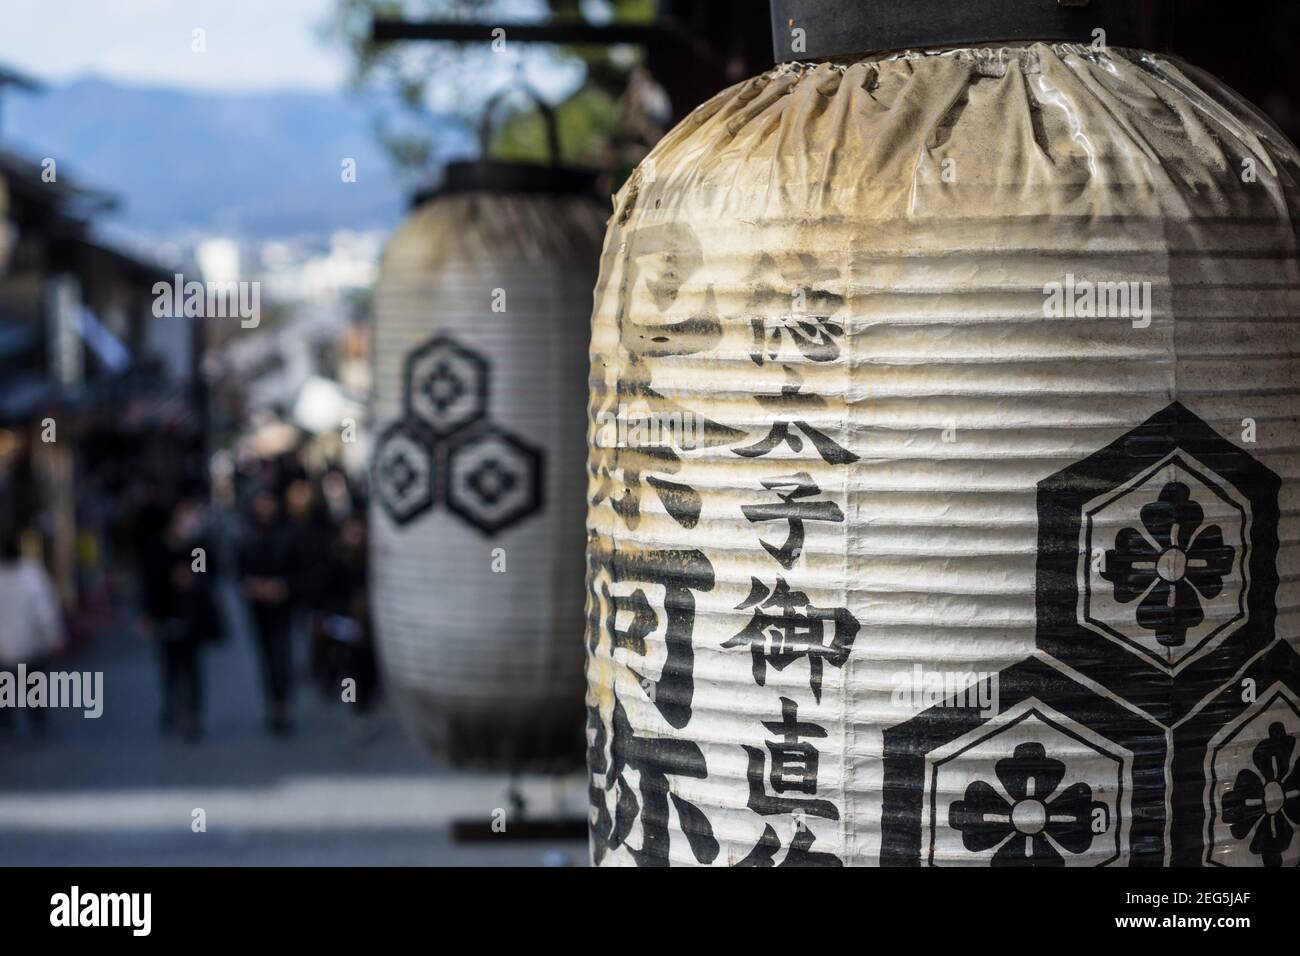 Une vieille lanterne japonaise devant une boutique de Ninenzaka, ou Ninen-zaka, une rue piétonne préservée dans la zone Higashiyama de Kyoto, Japon Banque D'Images